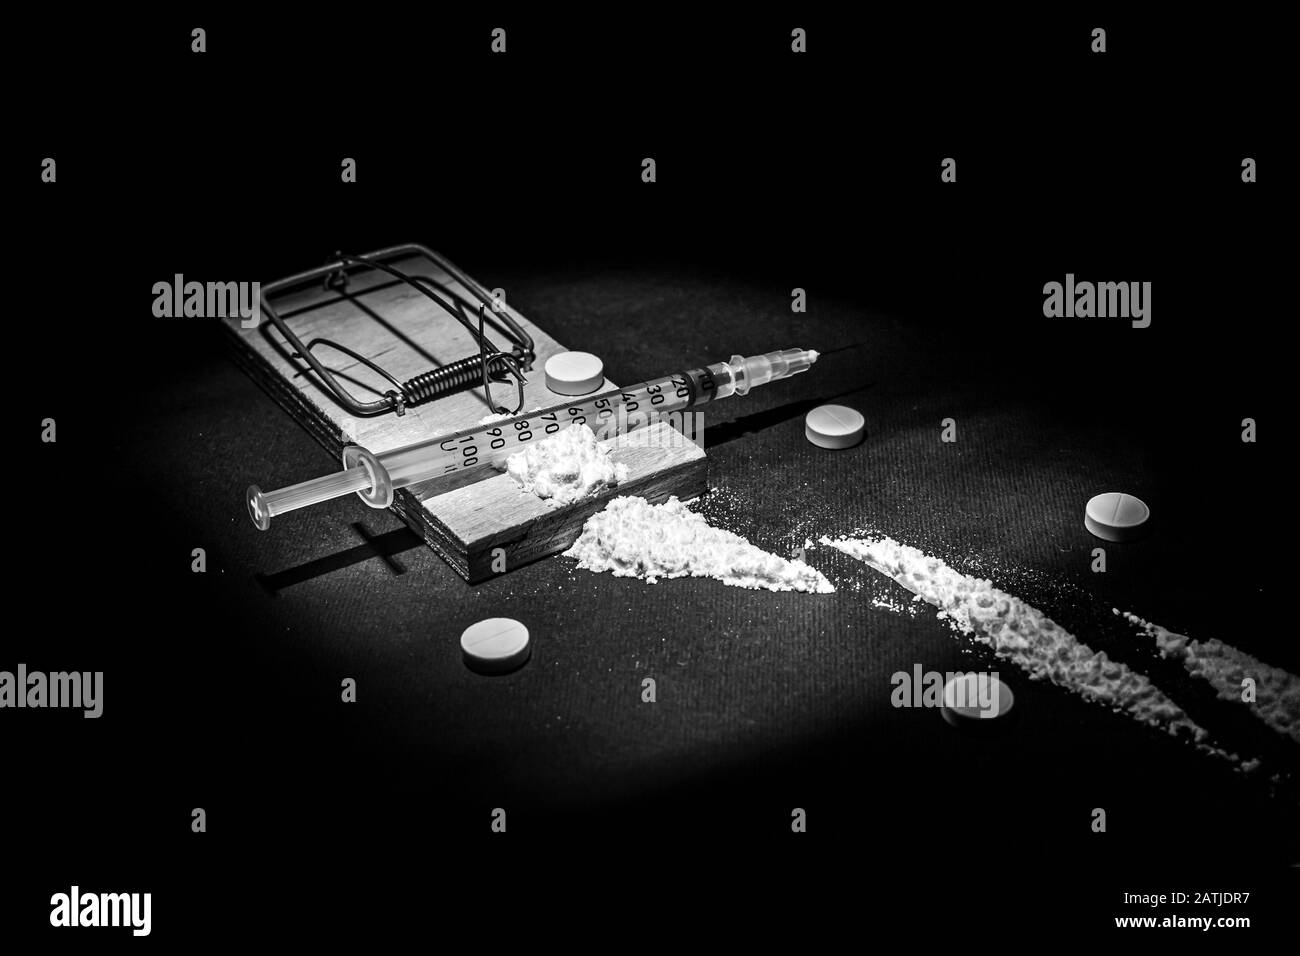 Dépendance et dépendance à l'égard des drogues. Une photo d'une mousetrap avec un appât sous forme de divers médicaments et médicaments. Banque D'Images